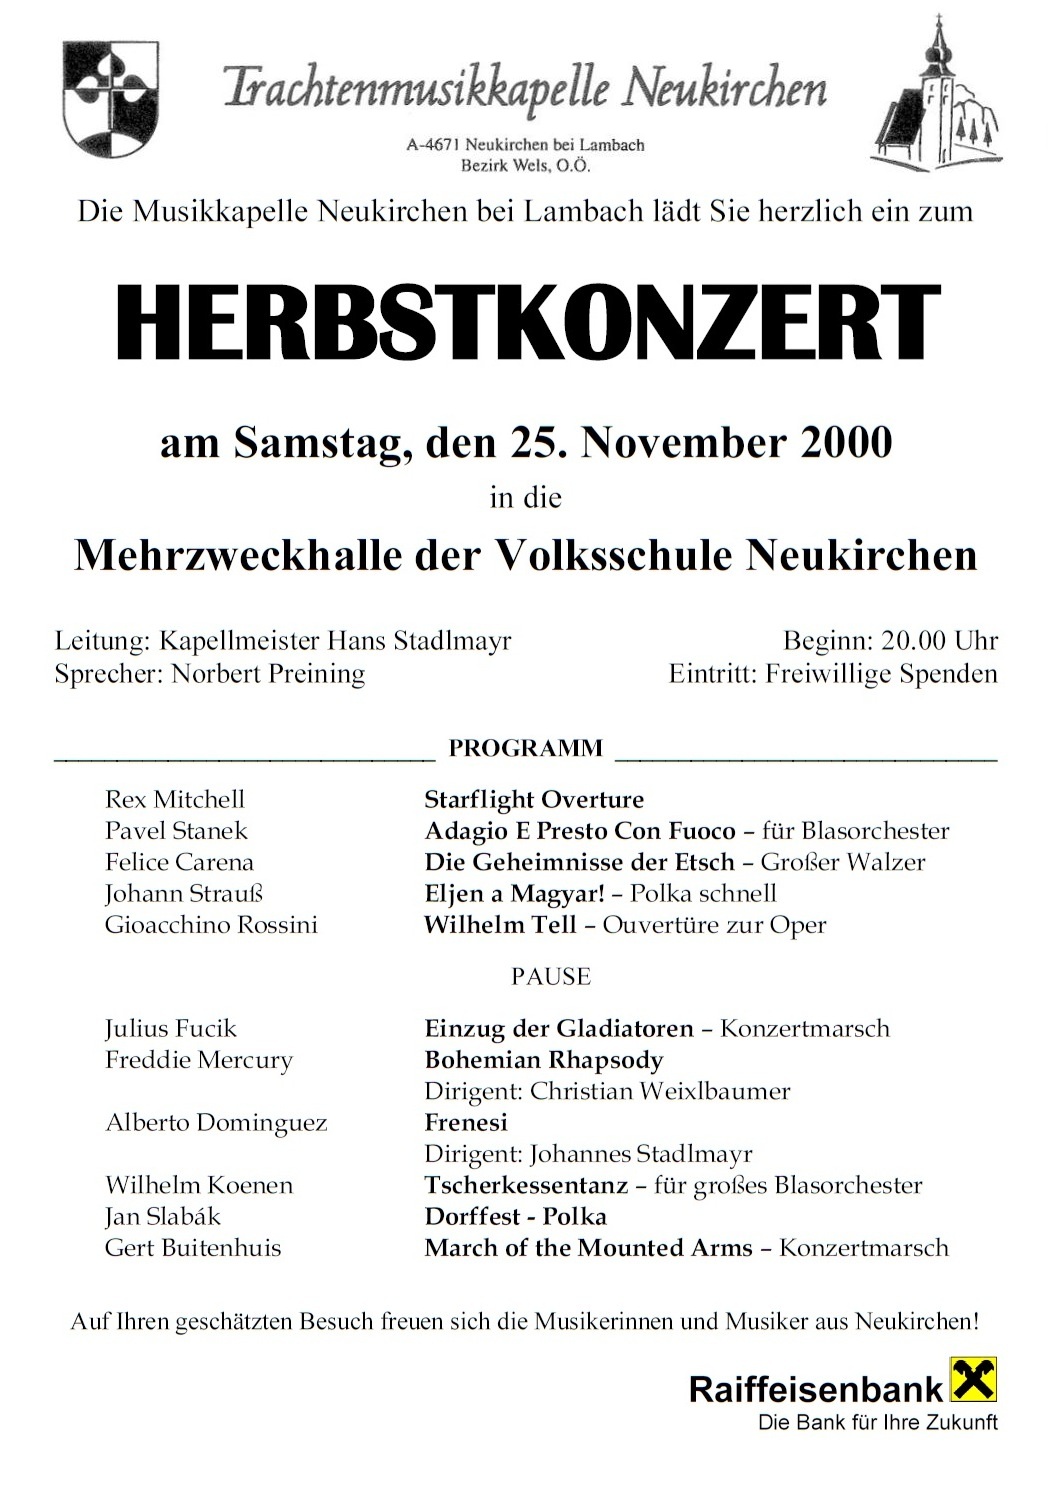 Herbstkonzert 2000